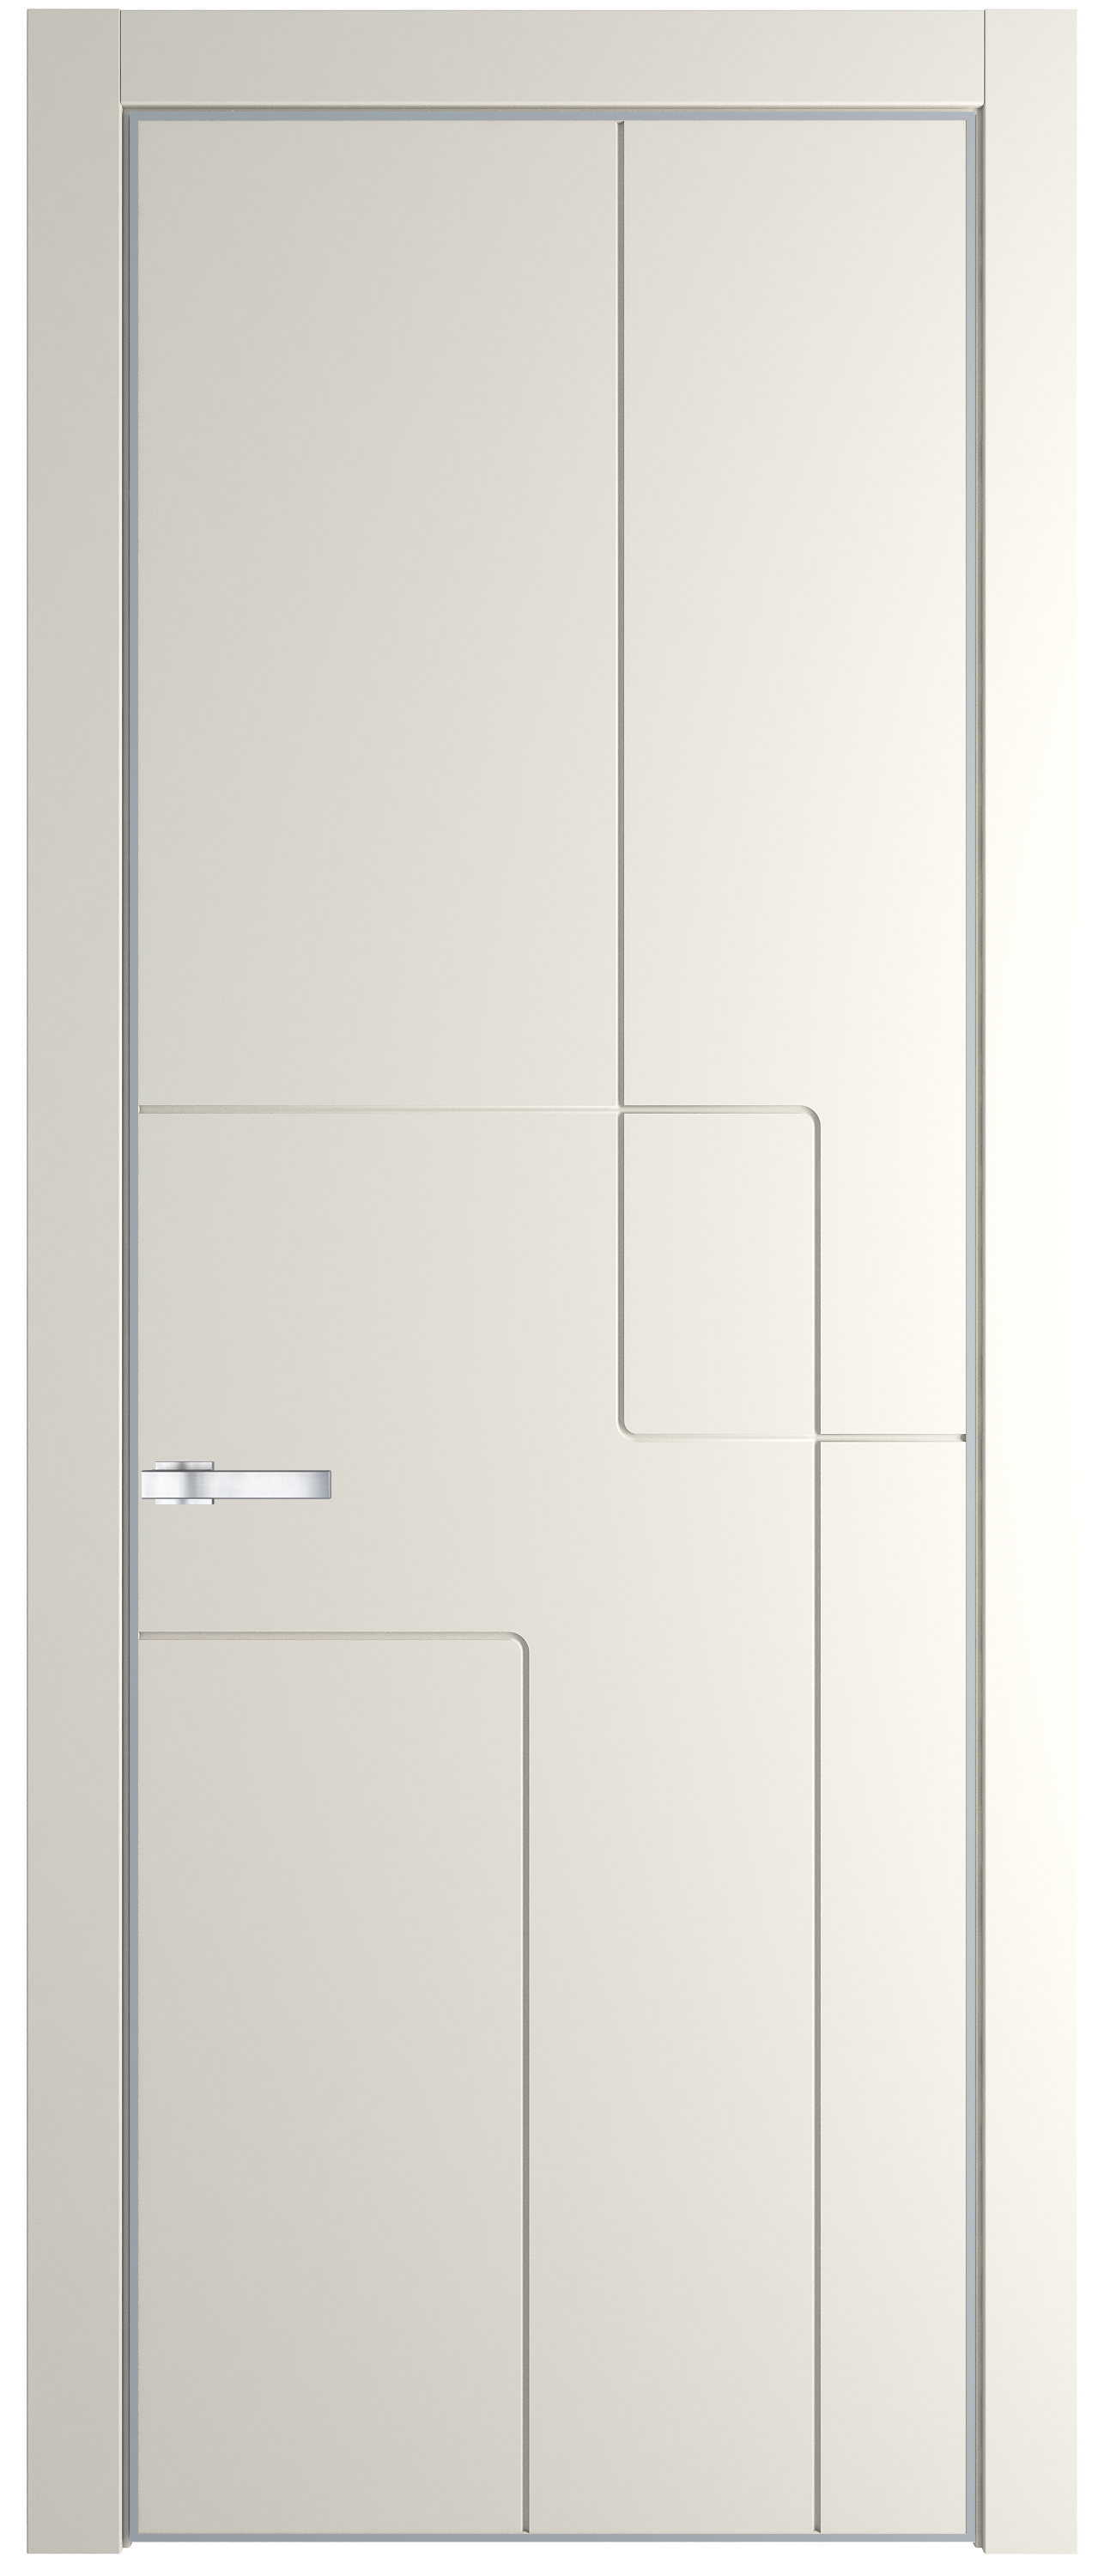 Межкомнатная дверь 3 PA, цвет Перламутр белый, фрезеровка геометрия